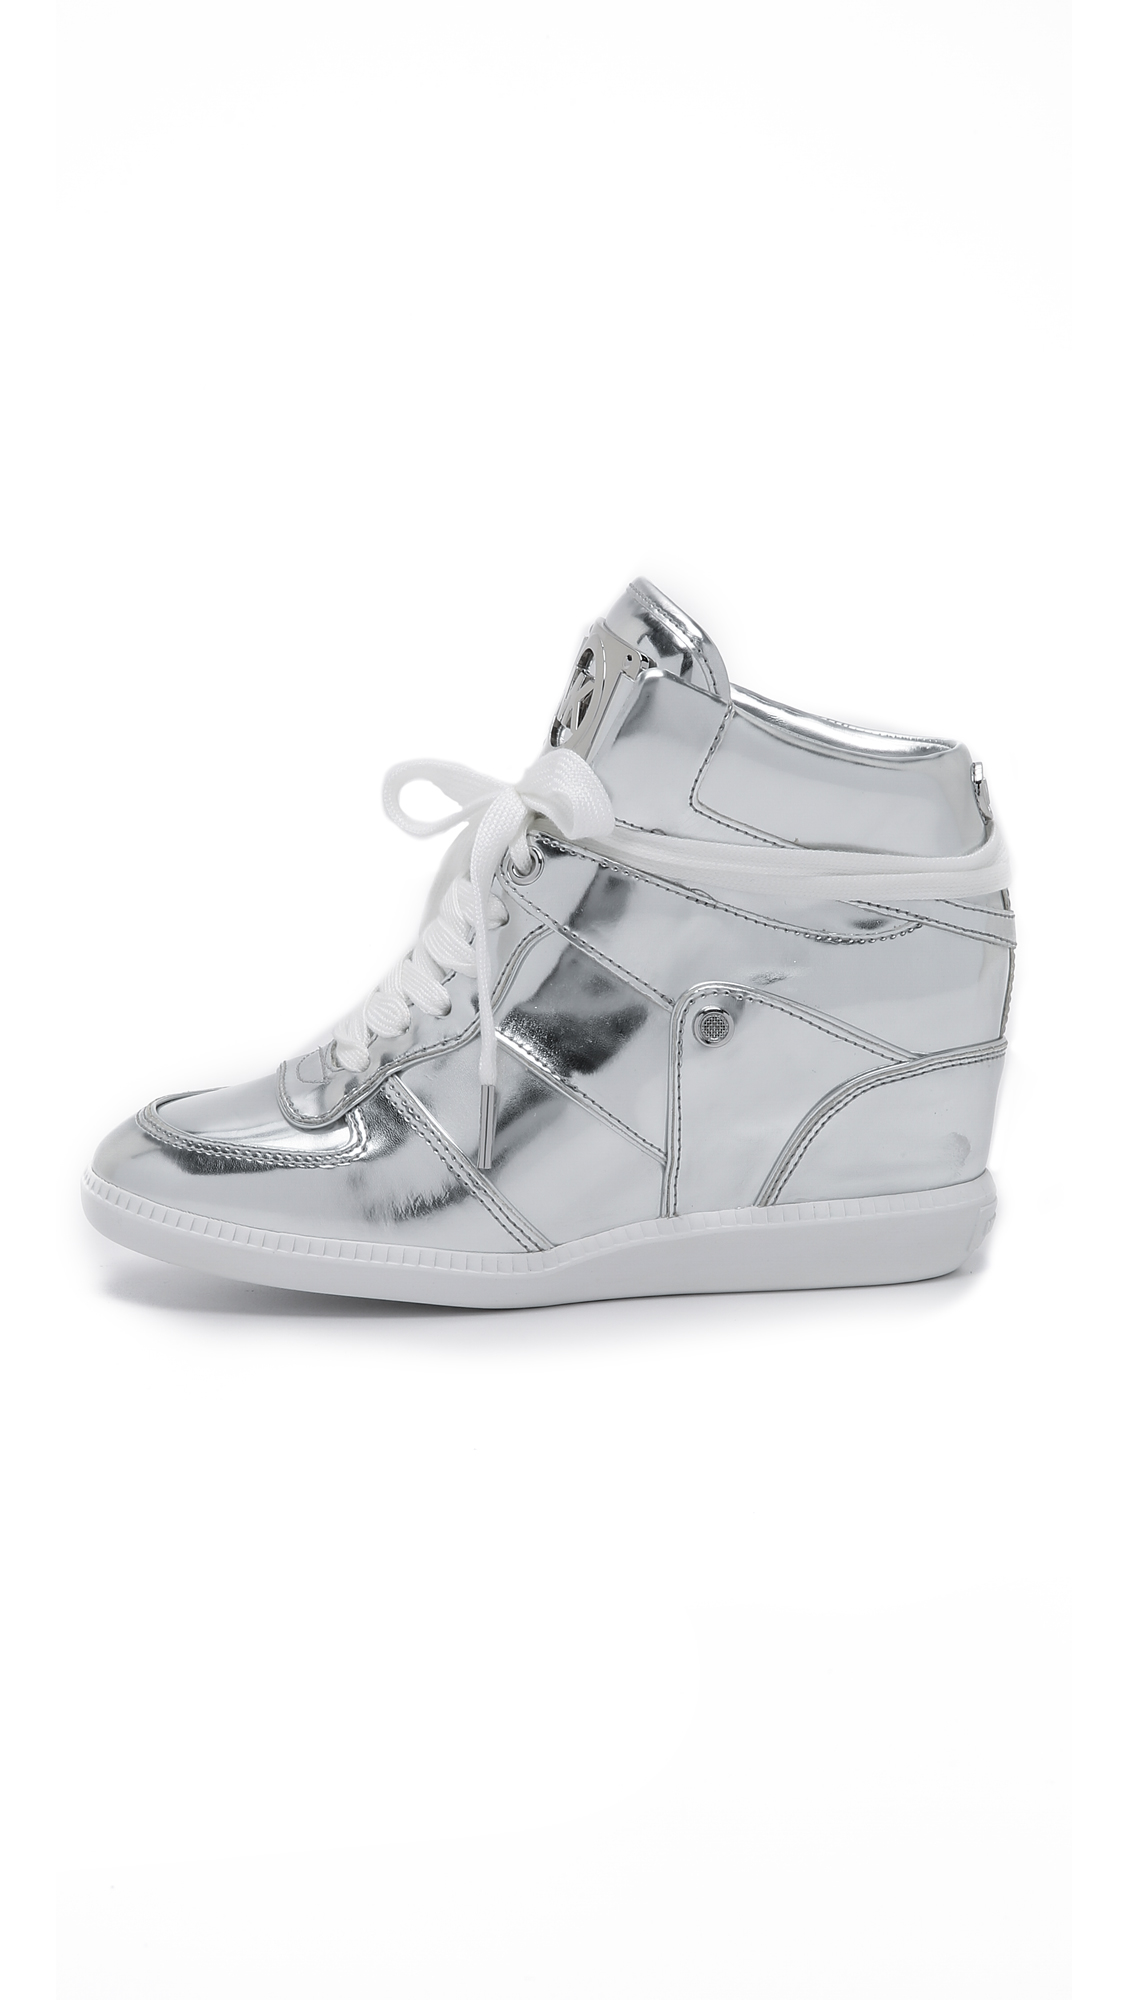 Michael Kors Emmett Glitter Fabric Rhinestone Slip On Sneakers | Dillard's